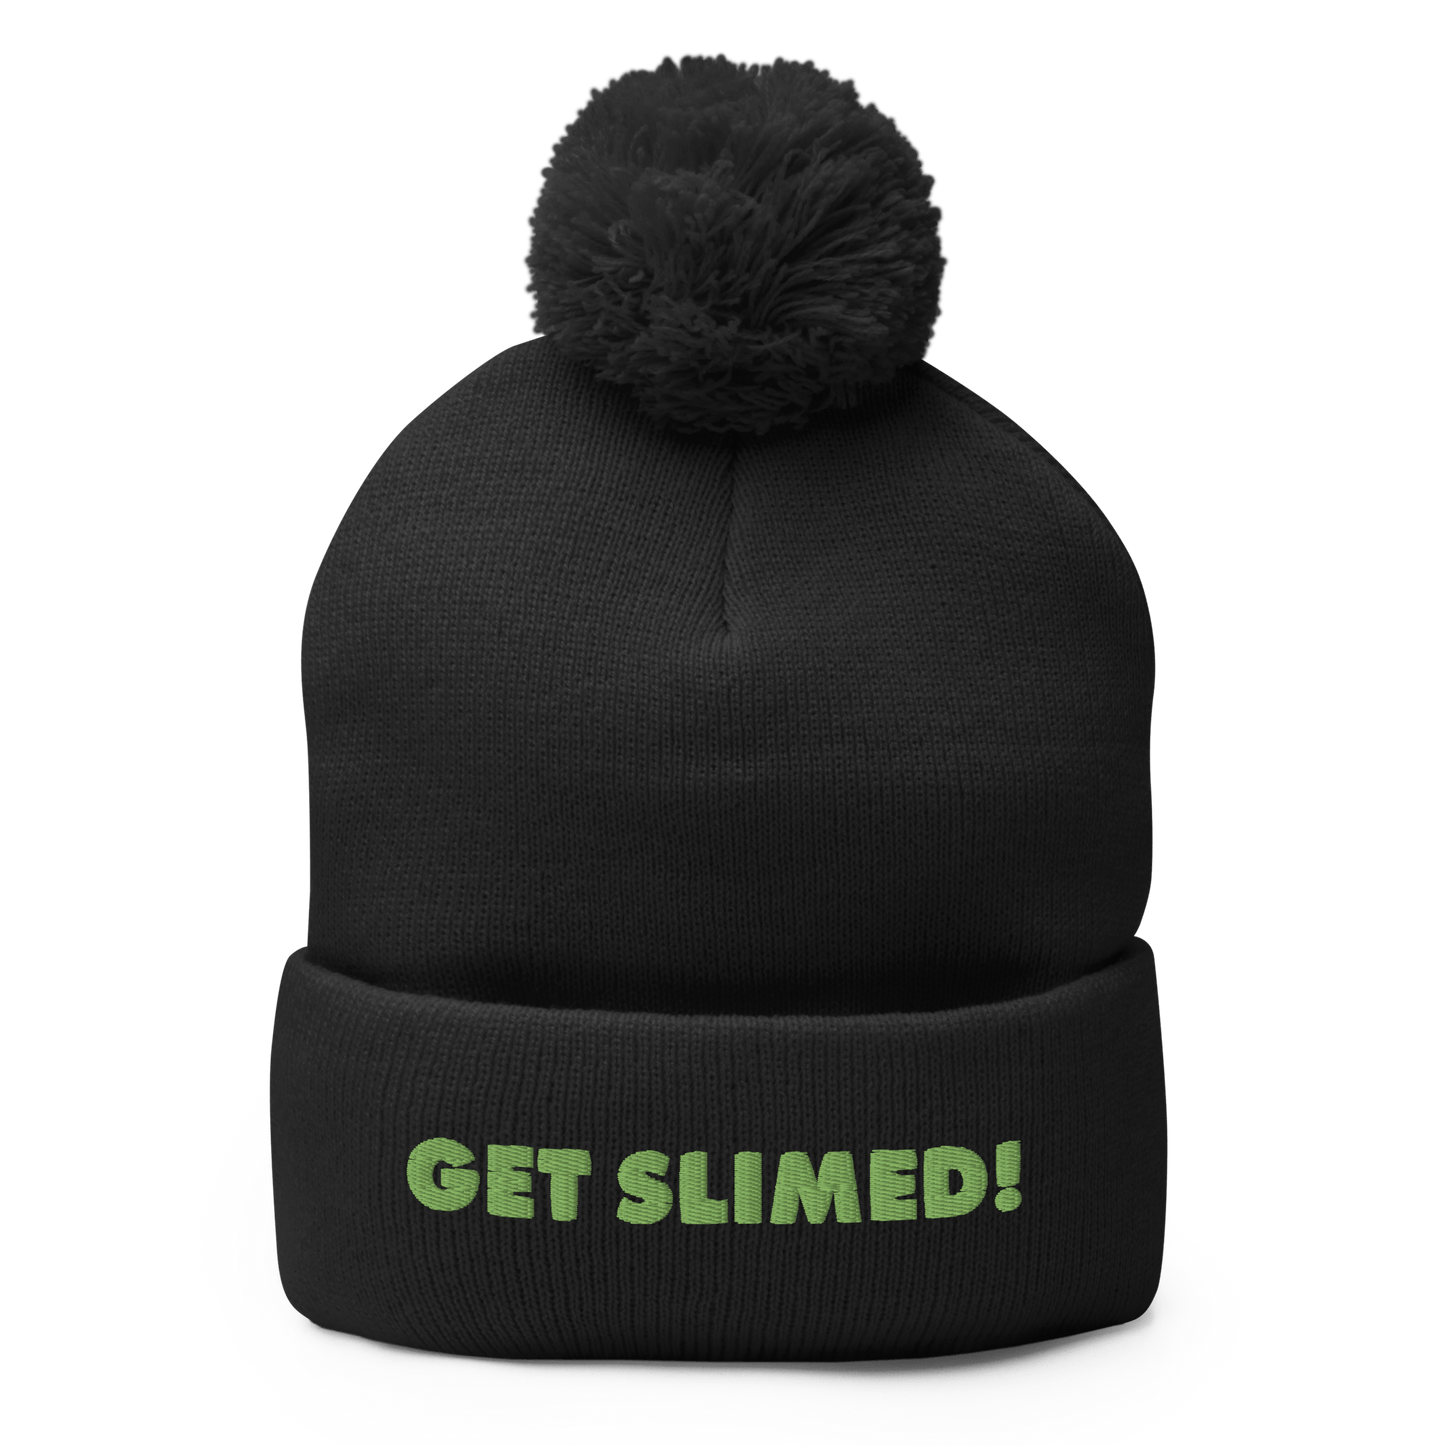 Slime Get Slimed! Pom Pom Knit Beanie - Paramount Shop